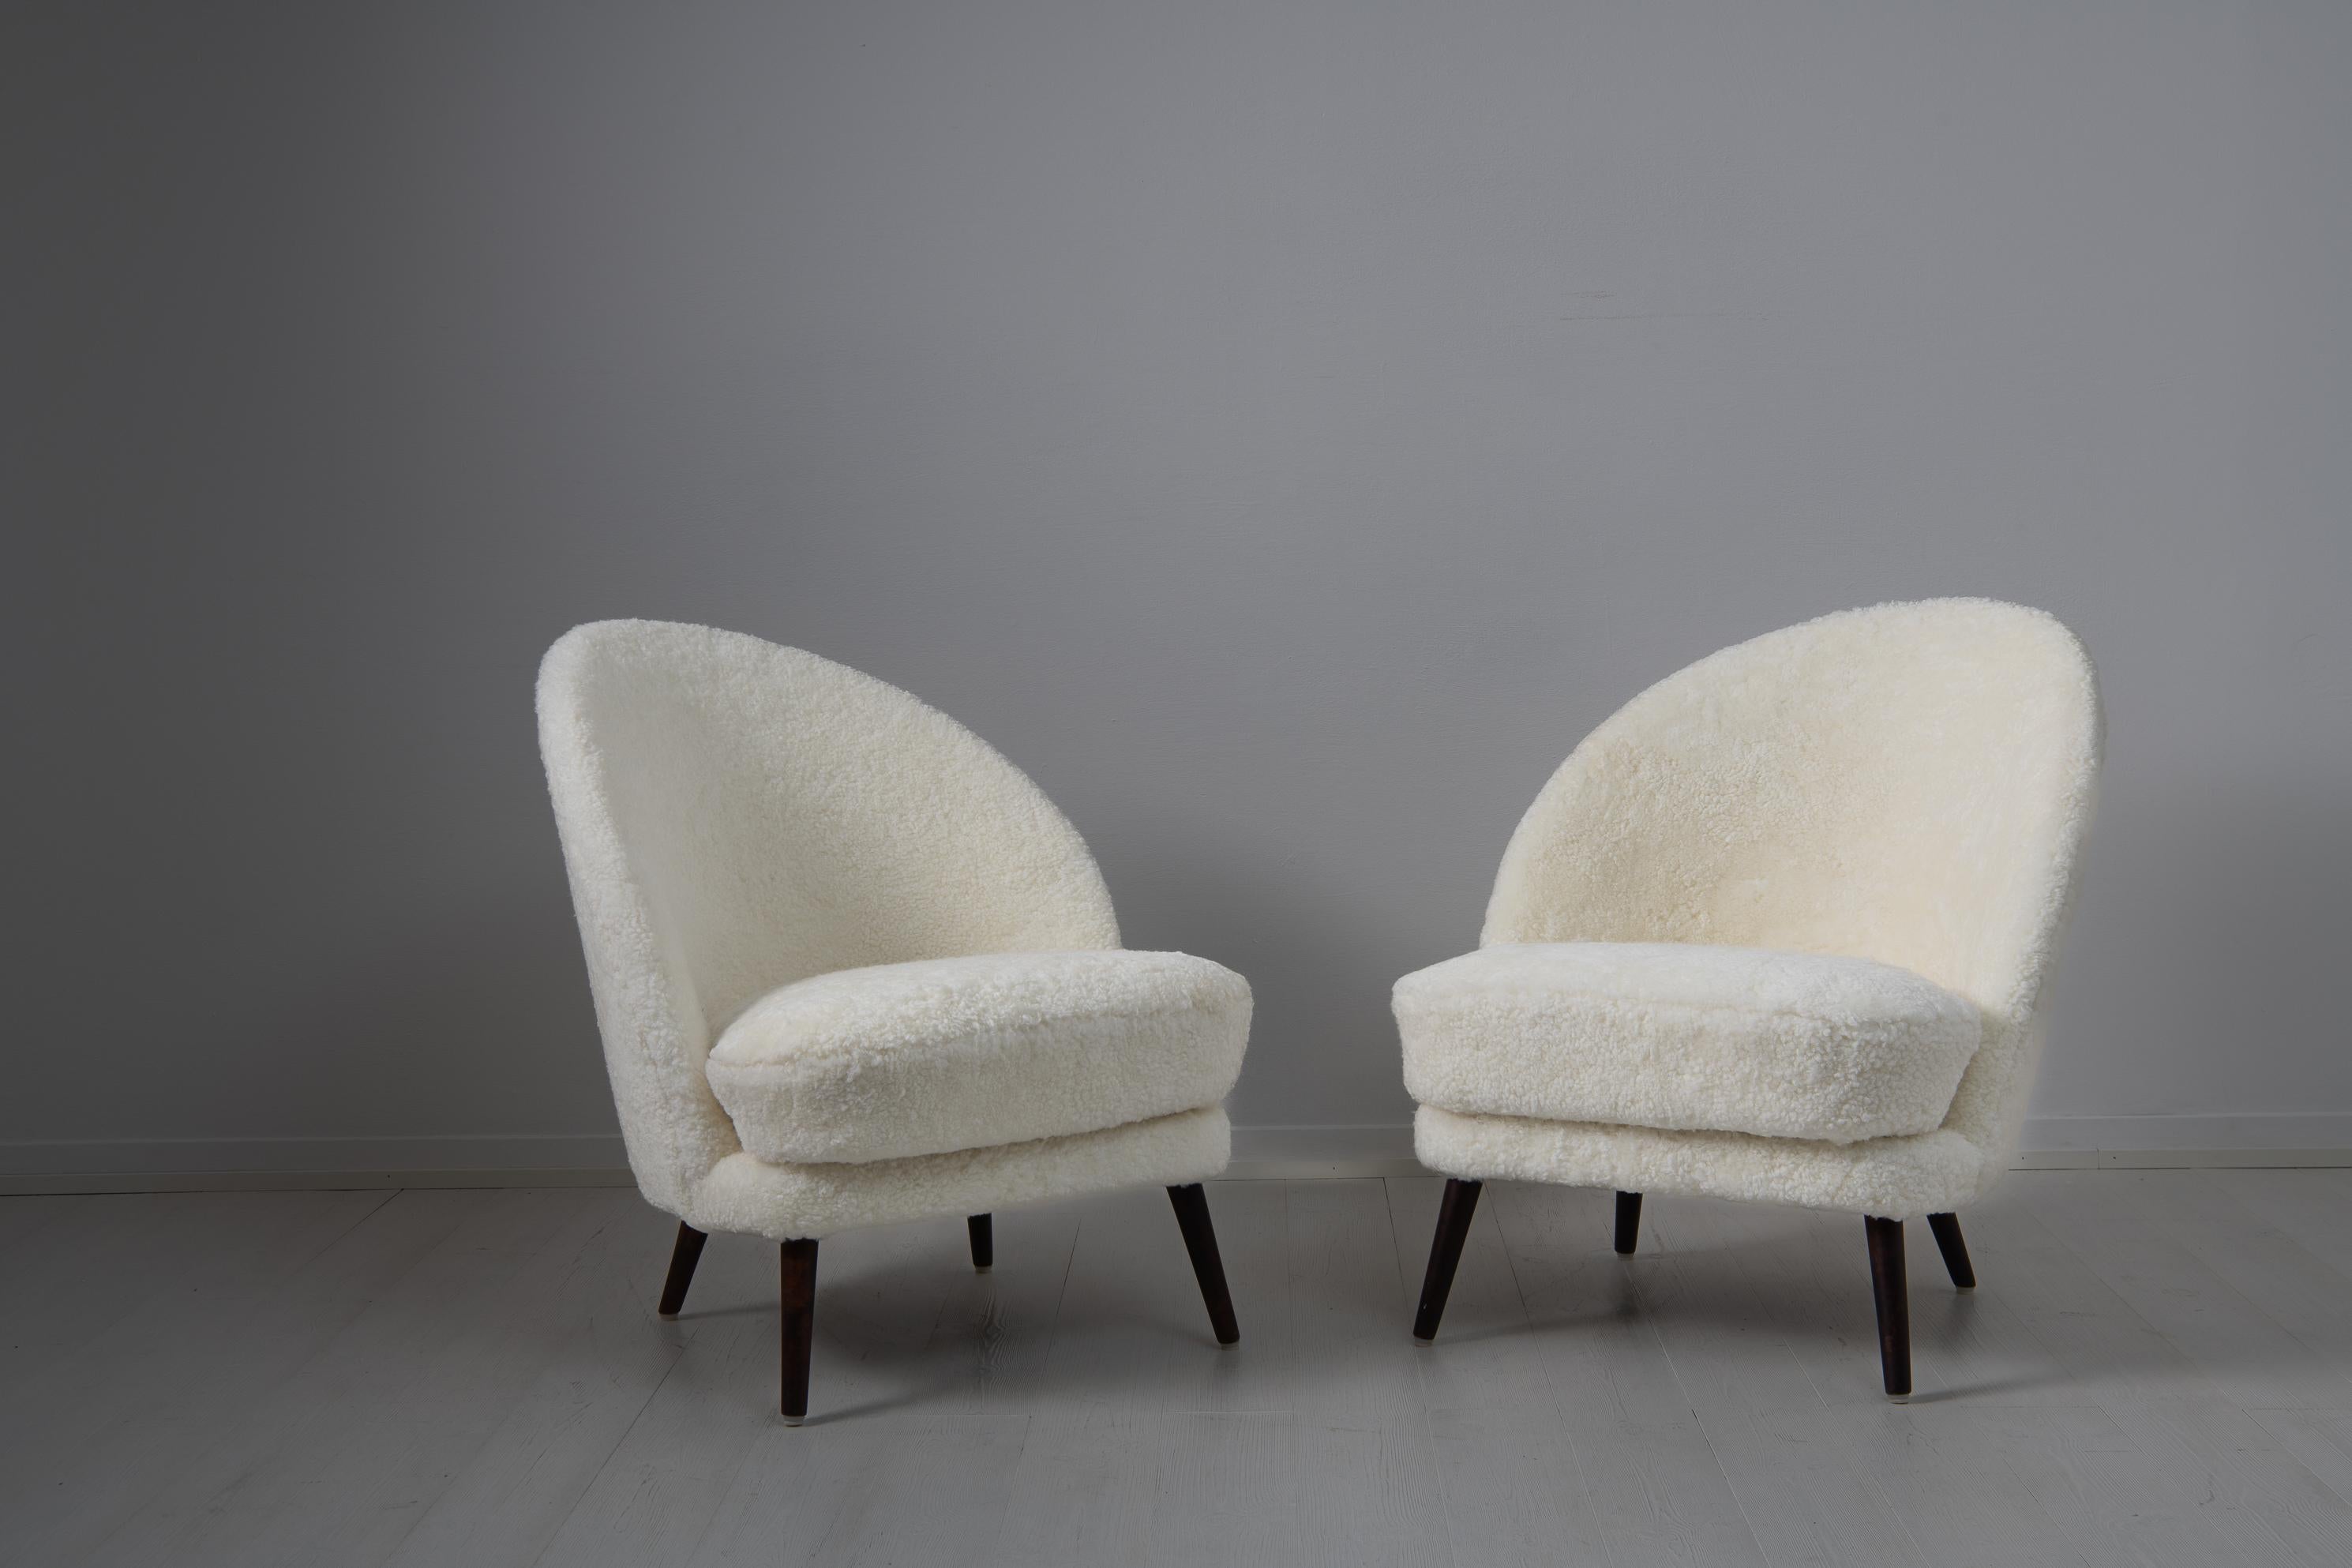 Chaises scandinaves modernes en peau de mouton attribuées à Arne Norell, Suède, du milieu du 20e siècle. Les chaises ont un dossier asymétrique et des pieds en bouleau teinté. Le design est épuré et classique, l'asymétrie créant un intérêt